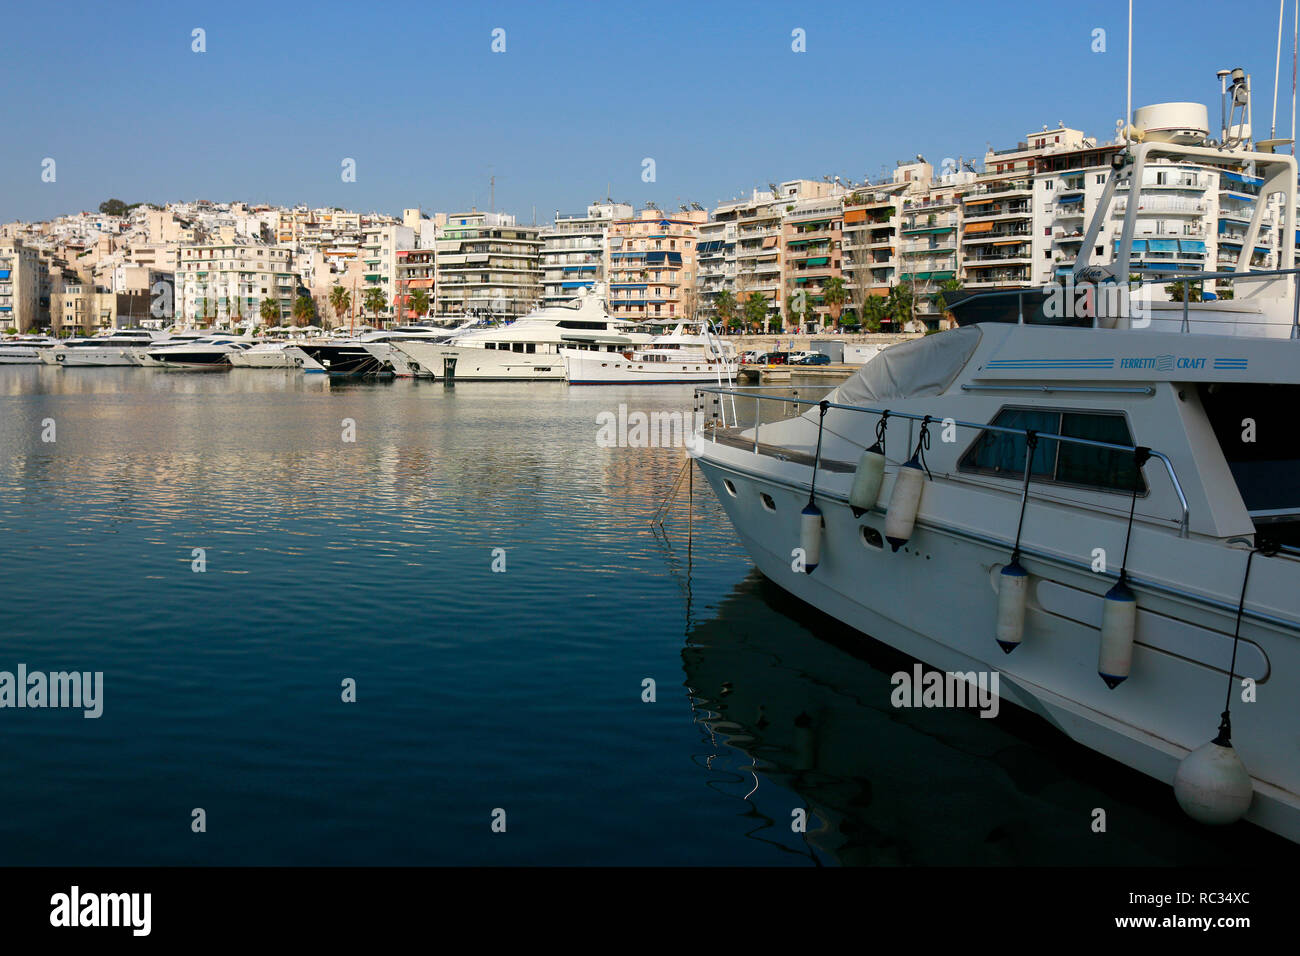 Yachthafen, Piraeus, Griechenland. Stock Photo